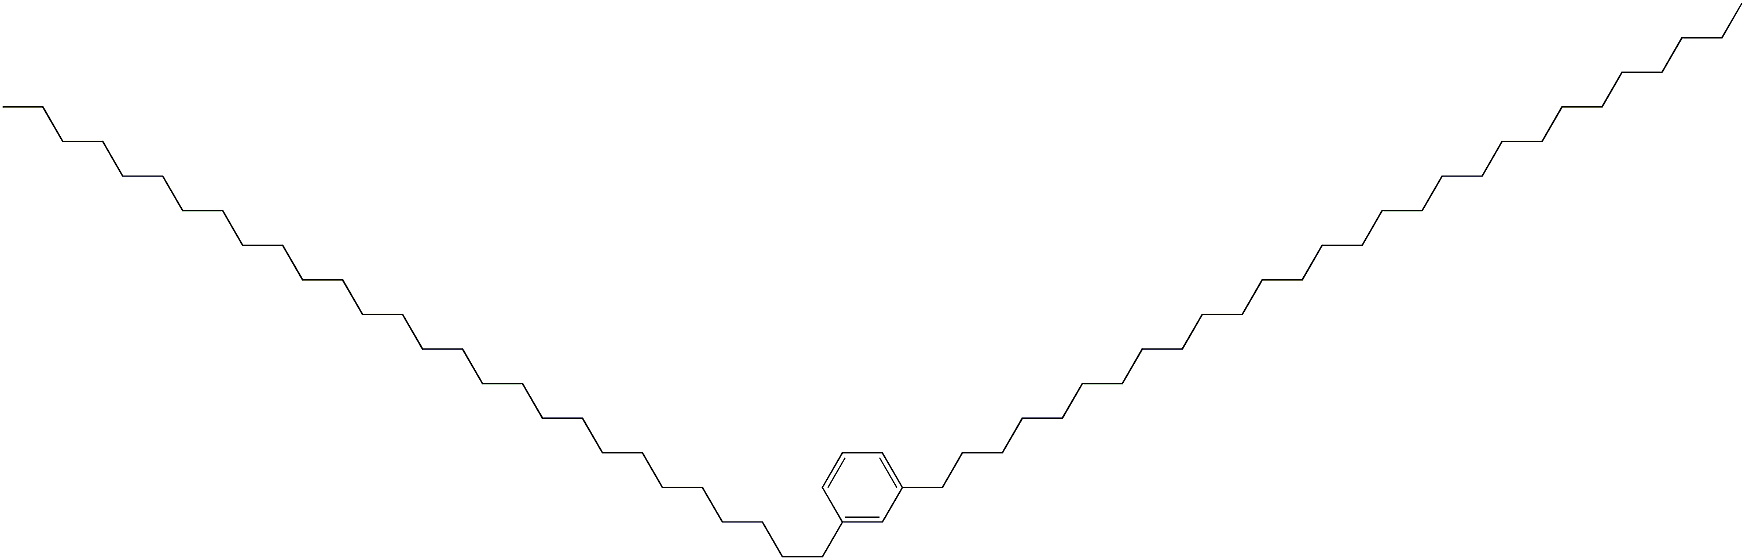 1,3-Dioctacosylbenzene|